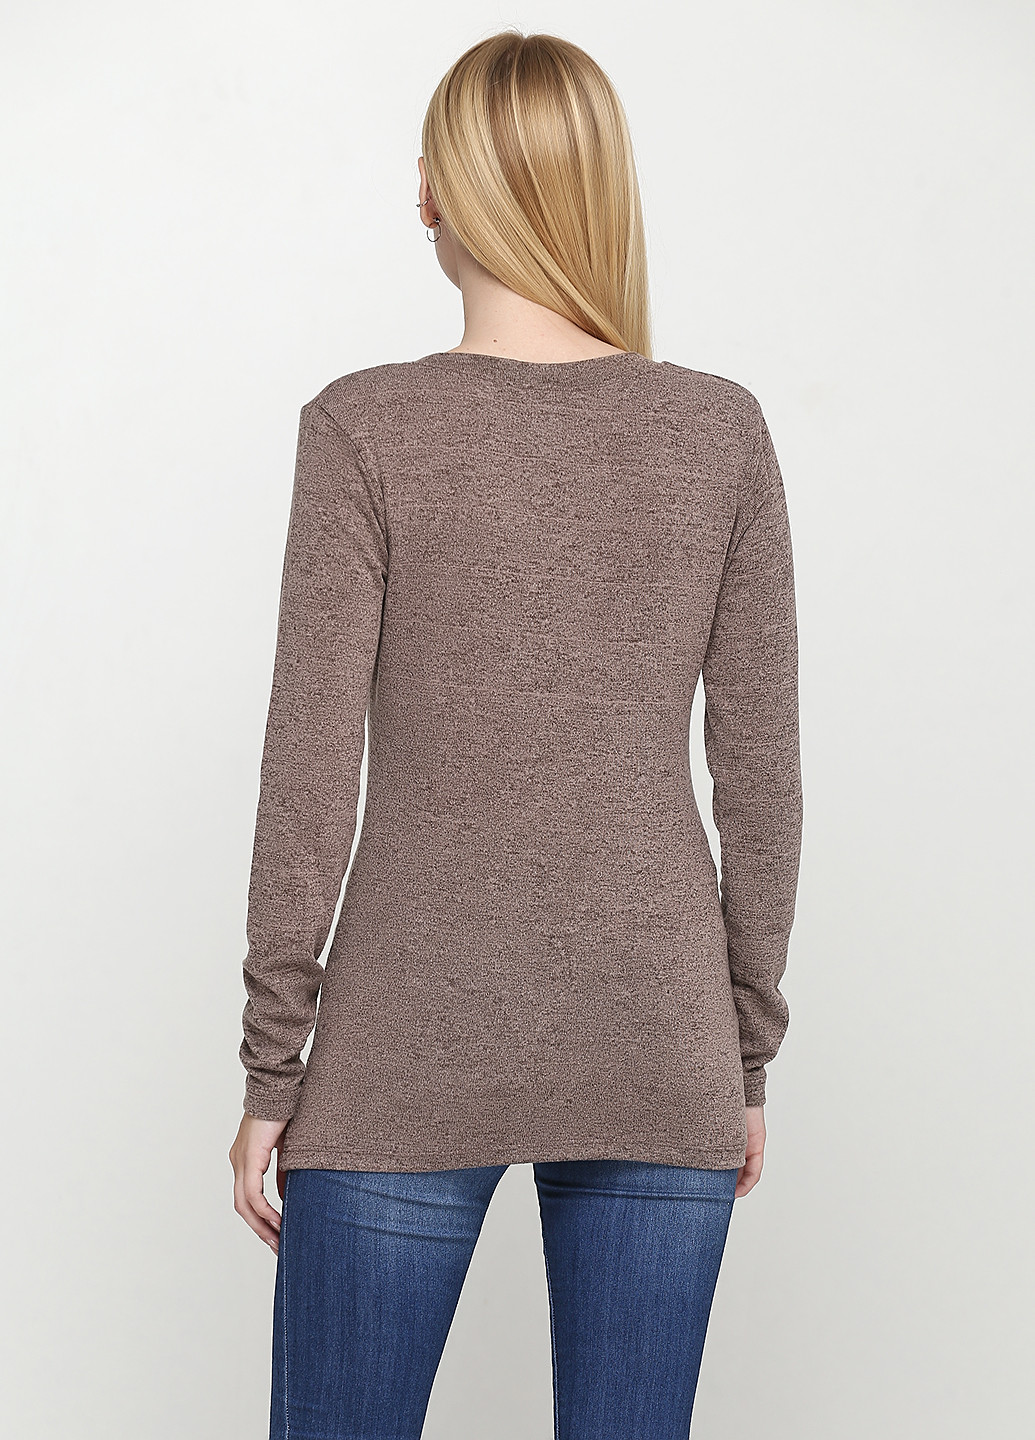 Коричневый демисезонный пуловер пуловер Zarga